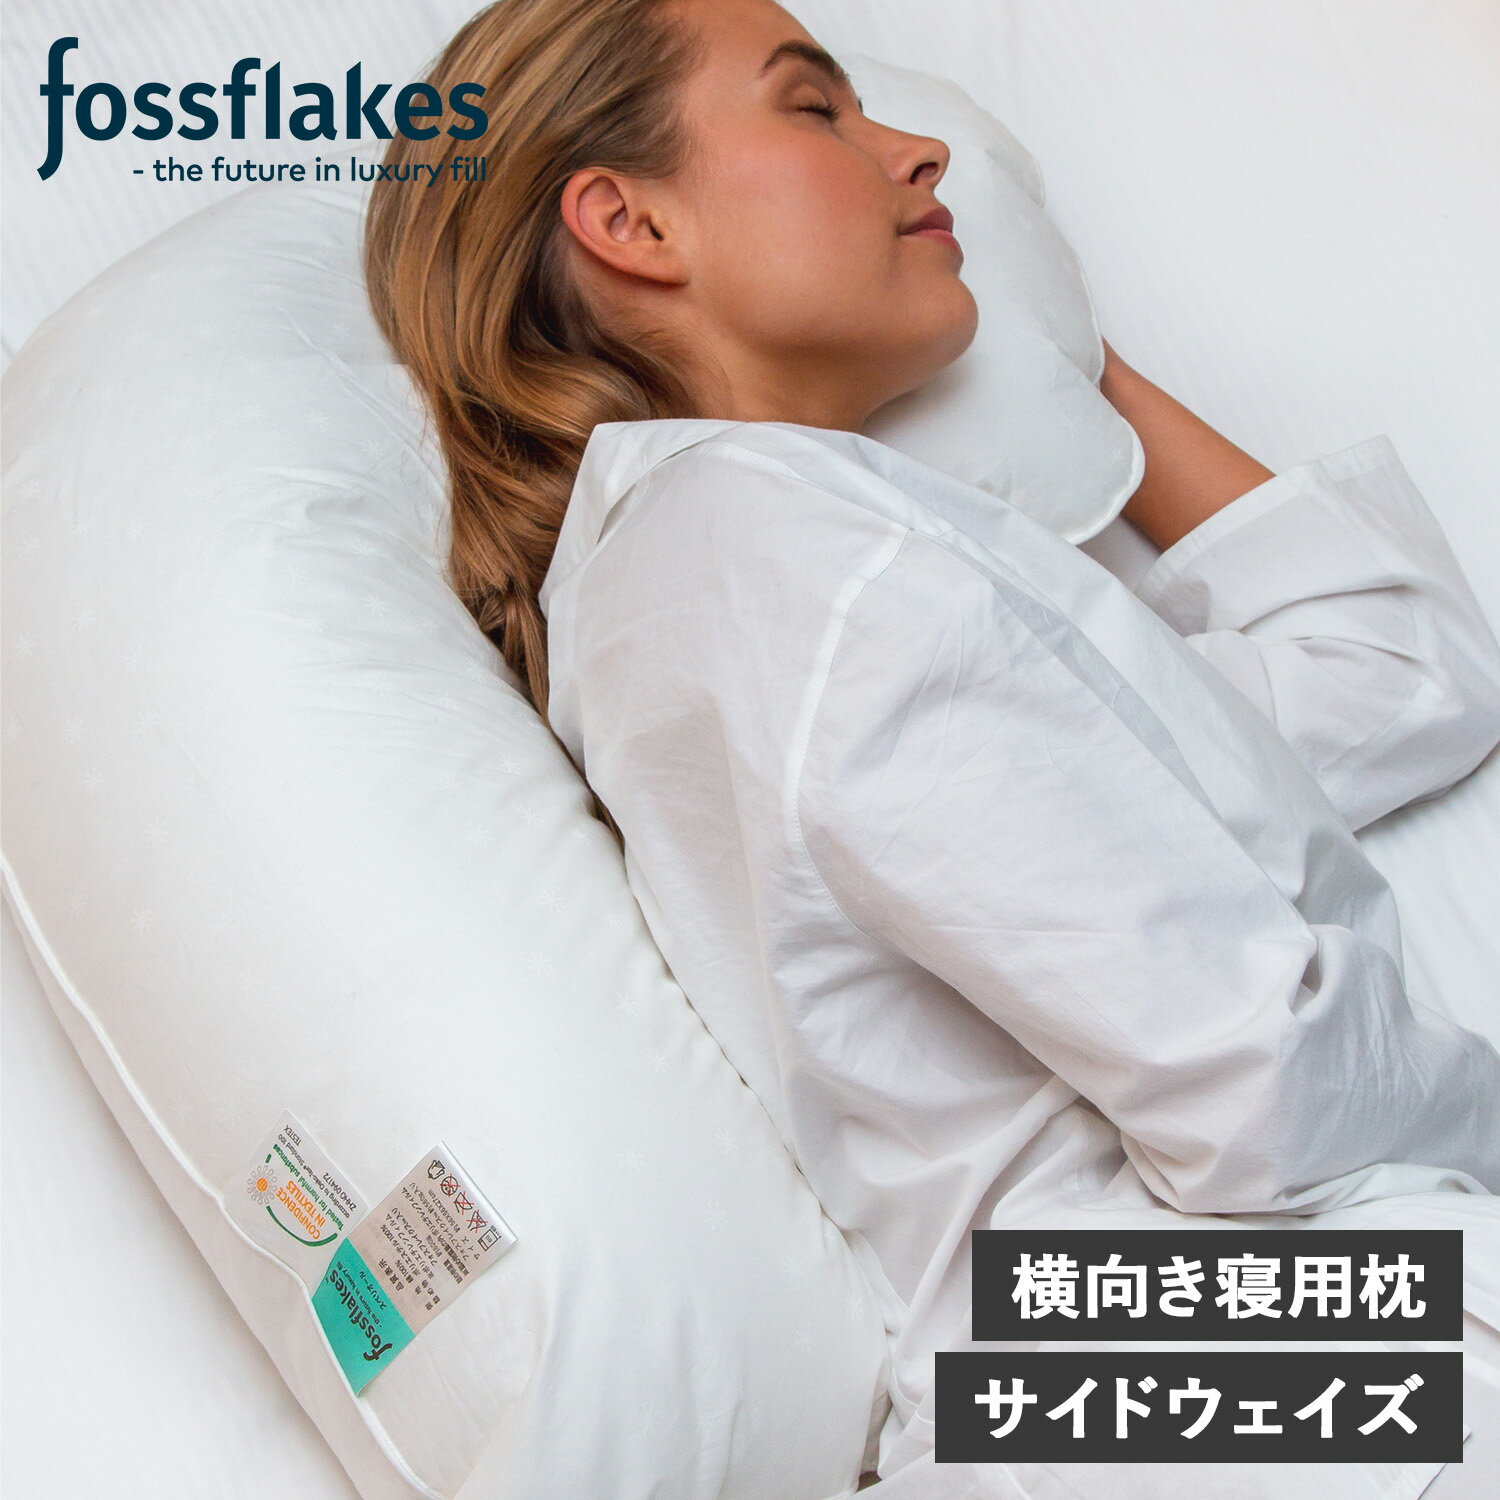  フォスフレイクス fossflakes 枕 抱き枕 洗える 横向き専用 サイドウェイズ ウォッシャブル SIDEWAYZ ホワイト 白 FF-5666SIDE